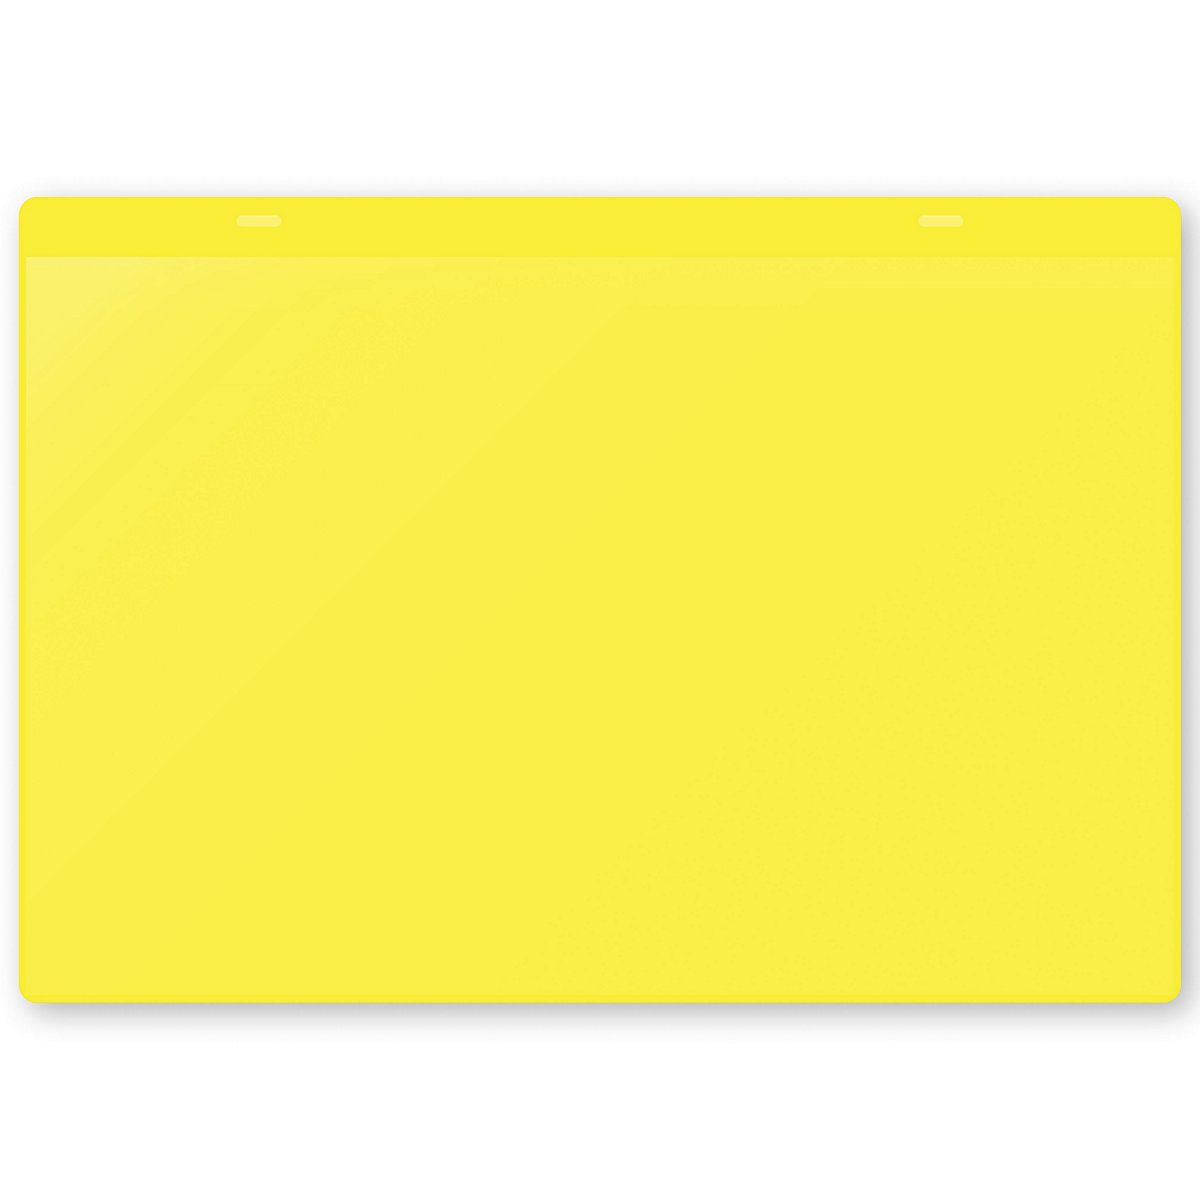 Öntapadó dokumentumtartó tasakok, DIN A4, fekvő, cs. e. 50 db, sárga